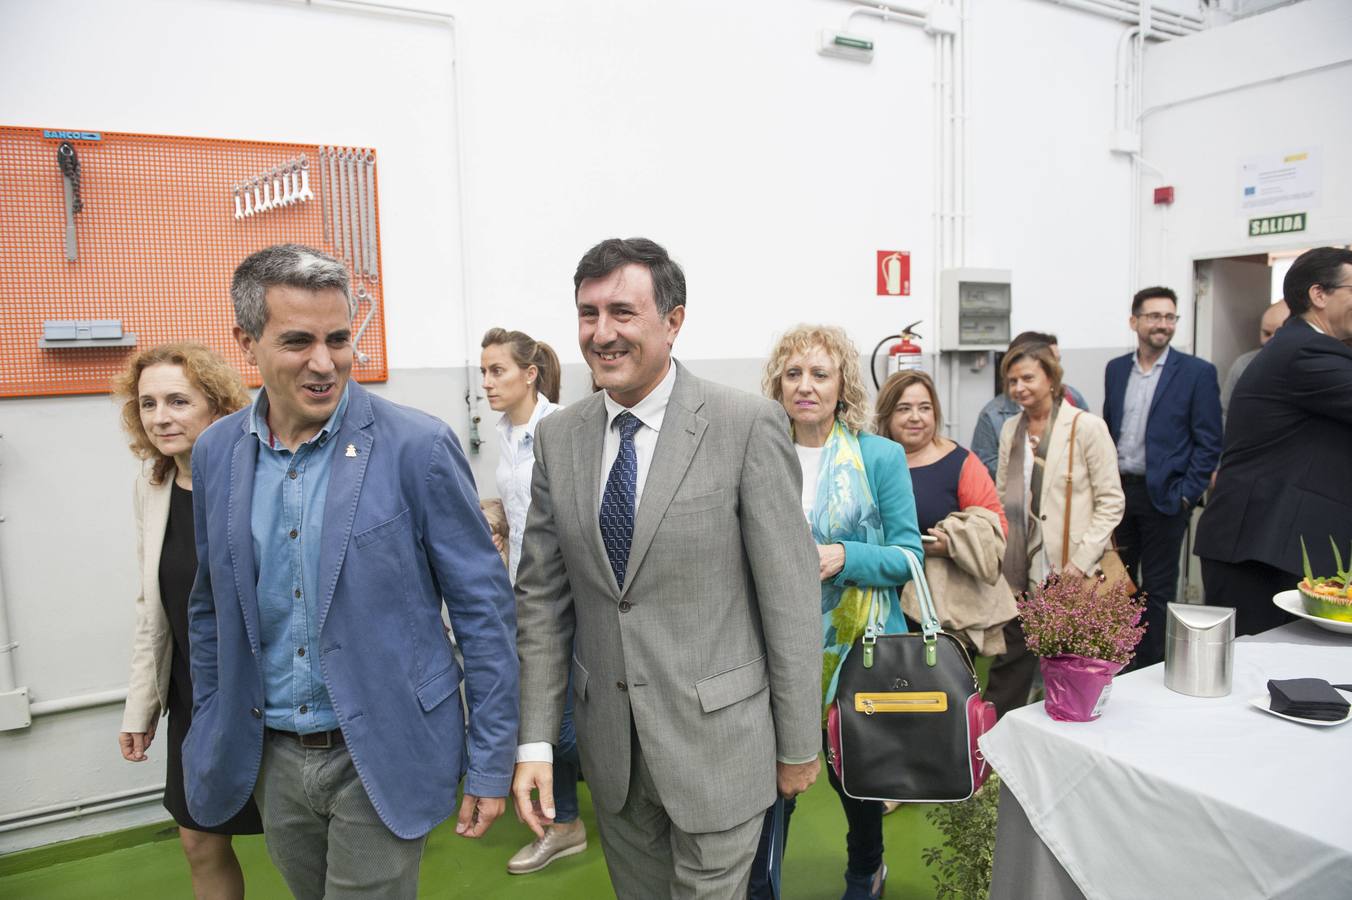 El PP pide a Mañanes que no utilice el Palacio de Festivales para «pagar favores» de Zuloaga